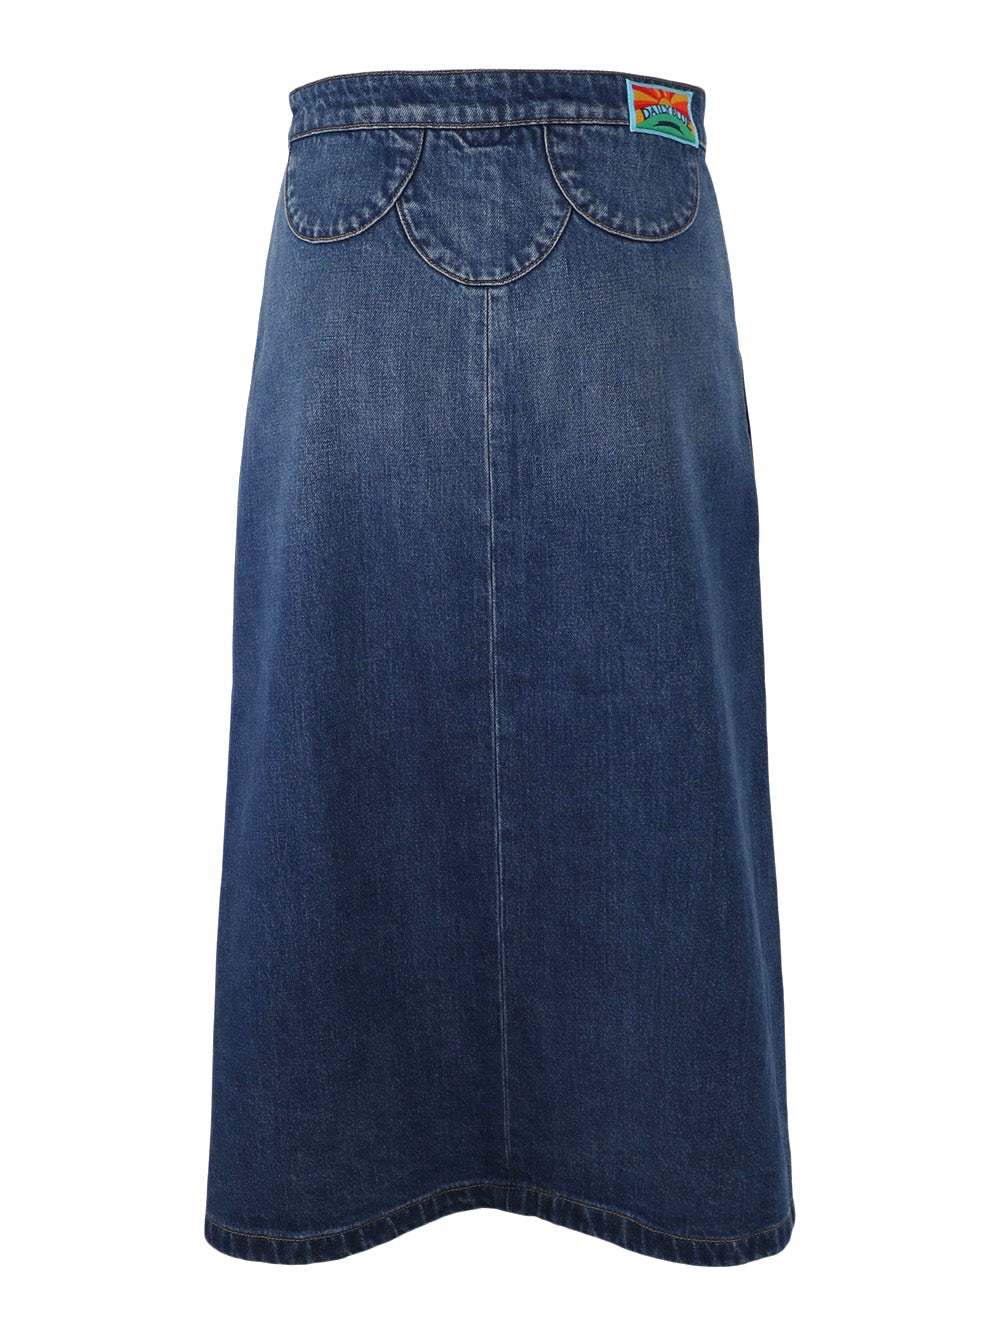 Tephy Skirt - Iconic